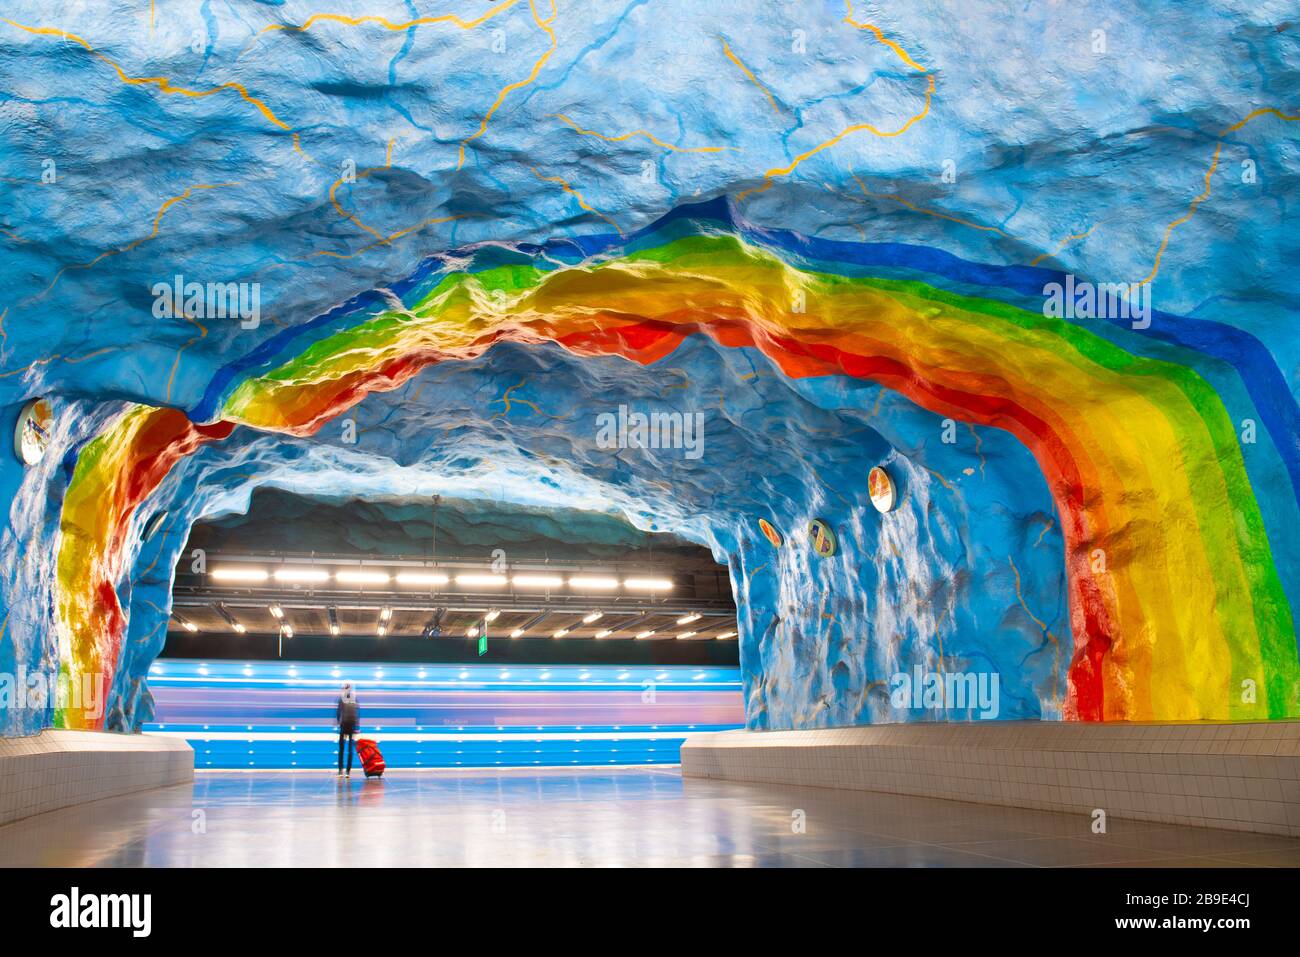 Passeggeri con un tronco alla stazione della metropolitana Stadium di Stoccolma in attesa di un treno sotterraneo, Svezia. Foto Stock